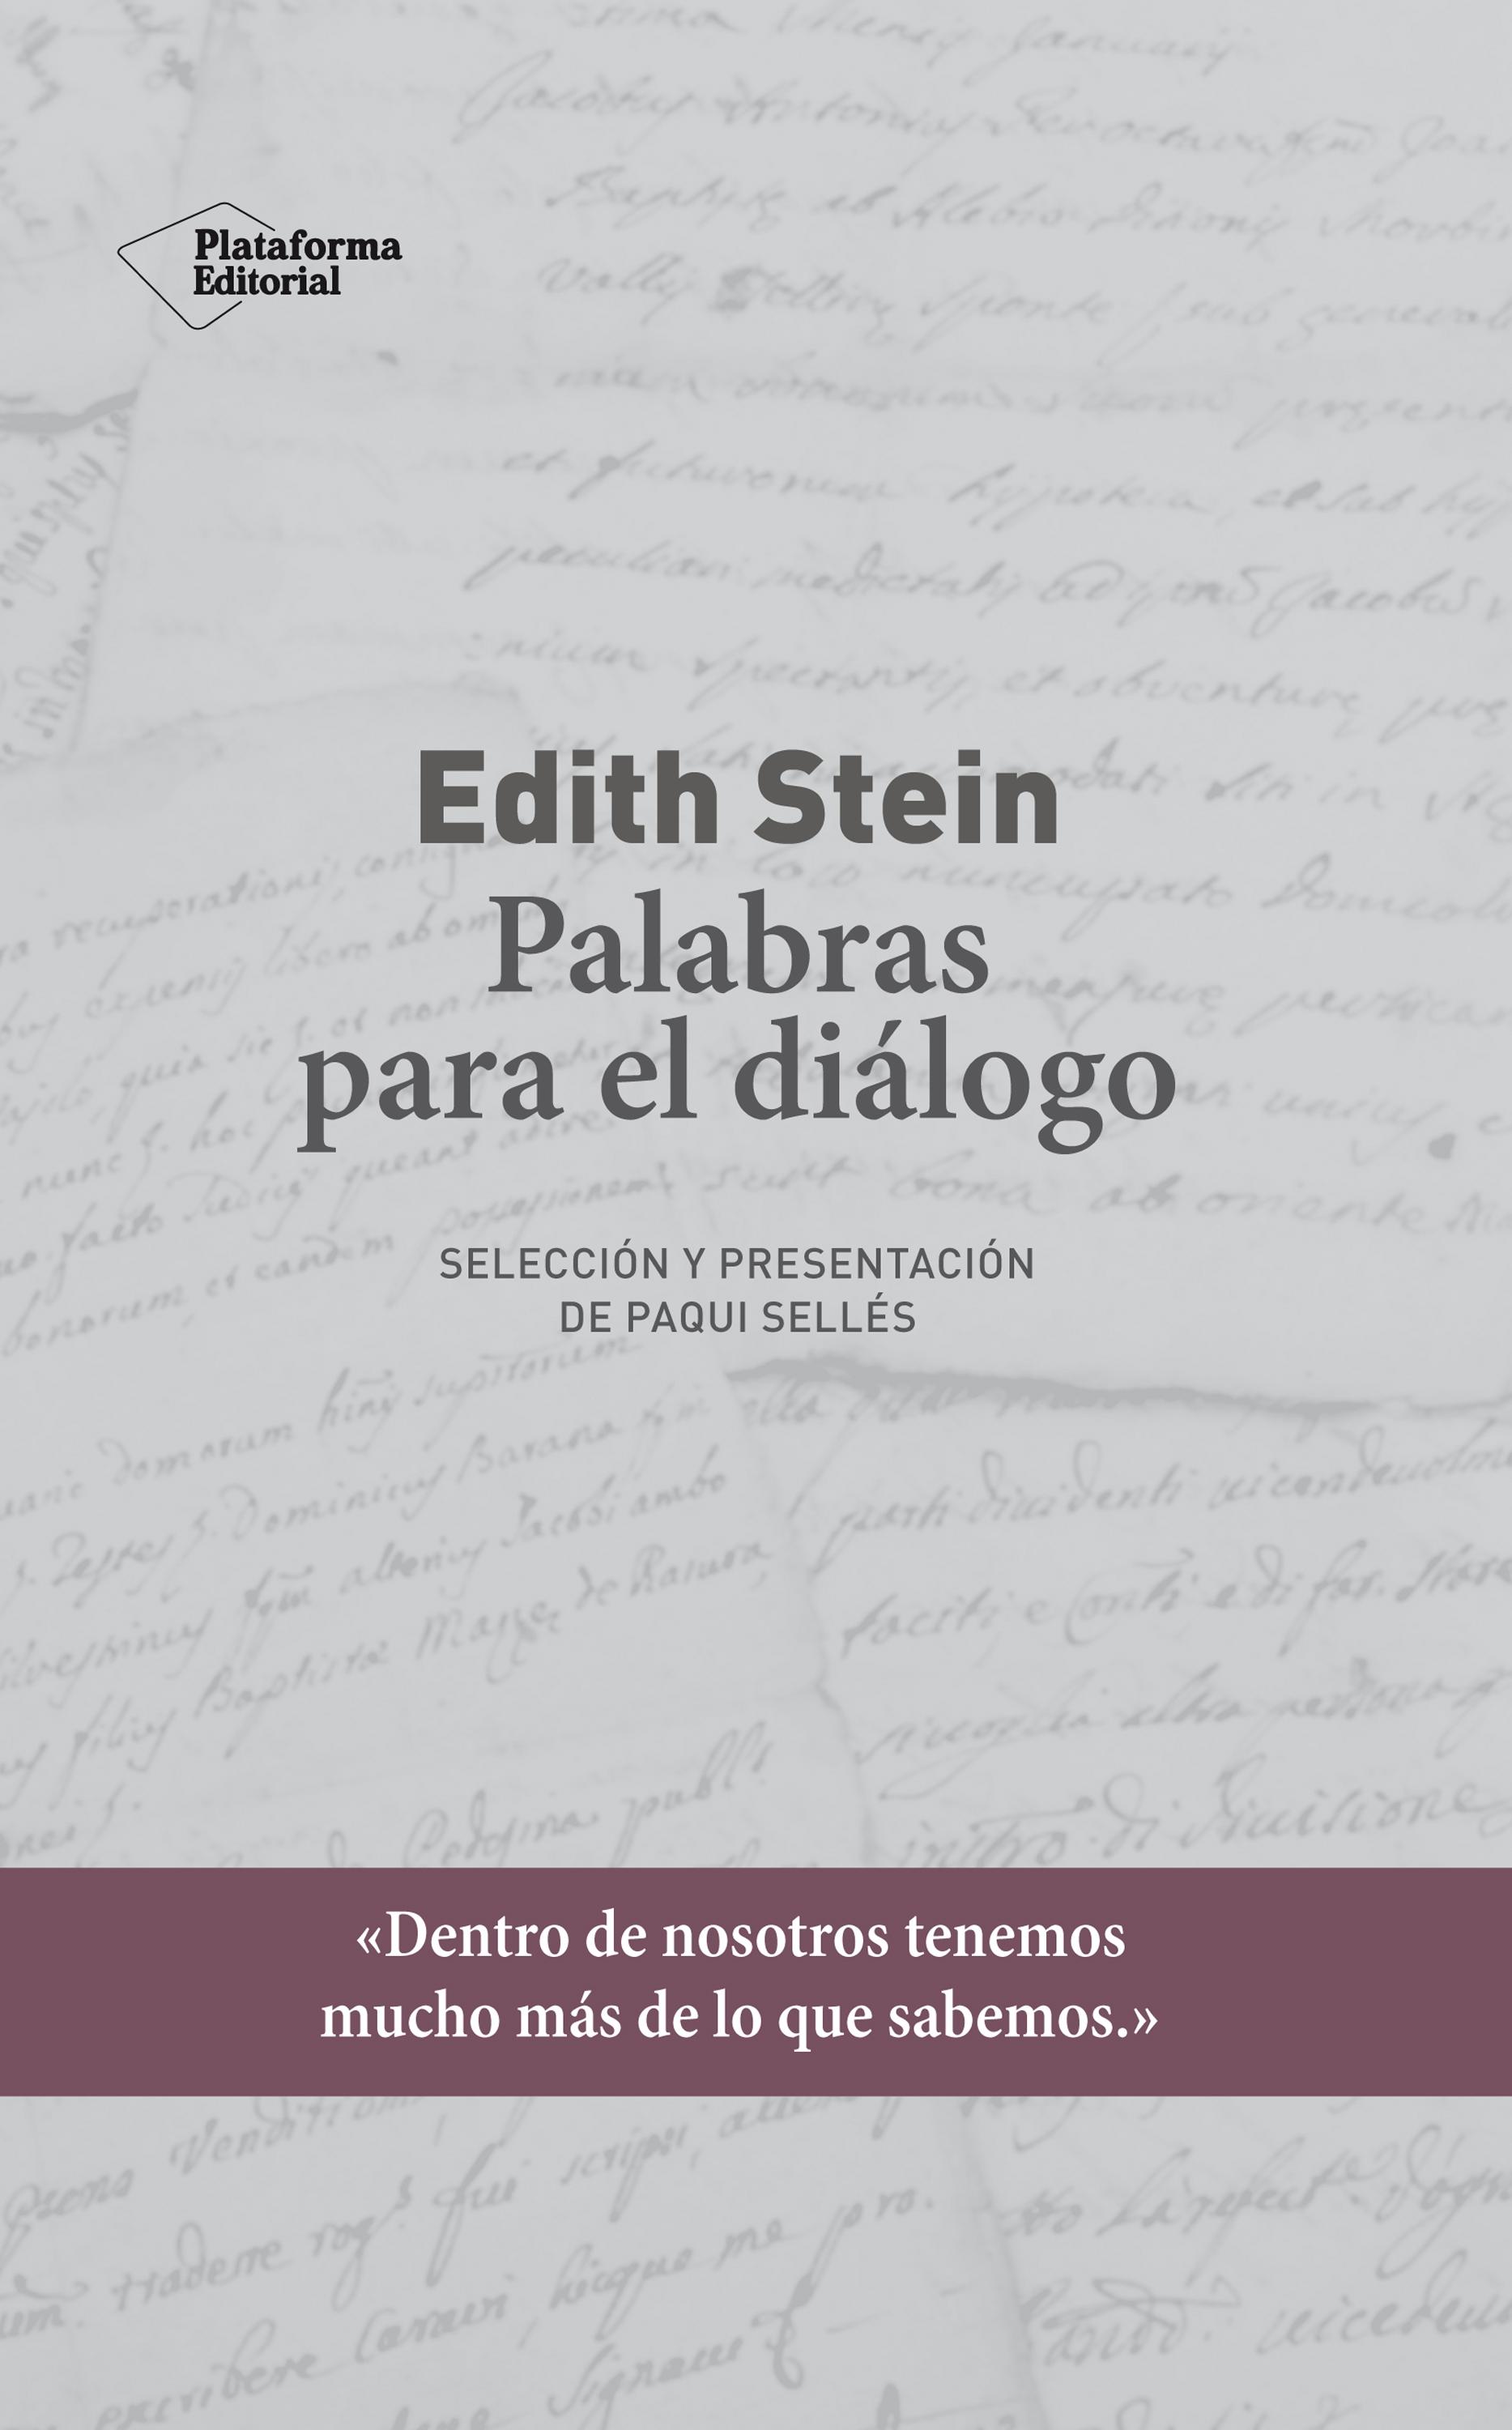 Edith Stein. Palabras para el diálogo "Selección y presentación de Paqui Sellés"